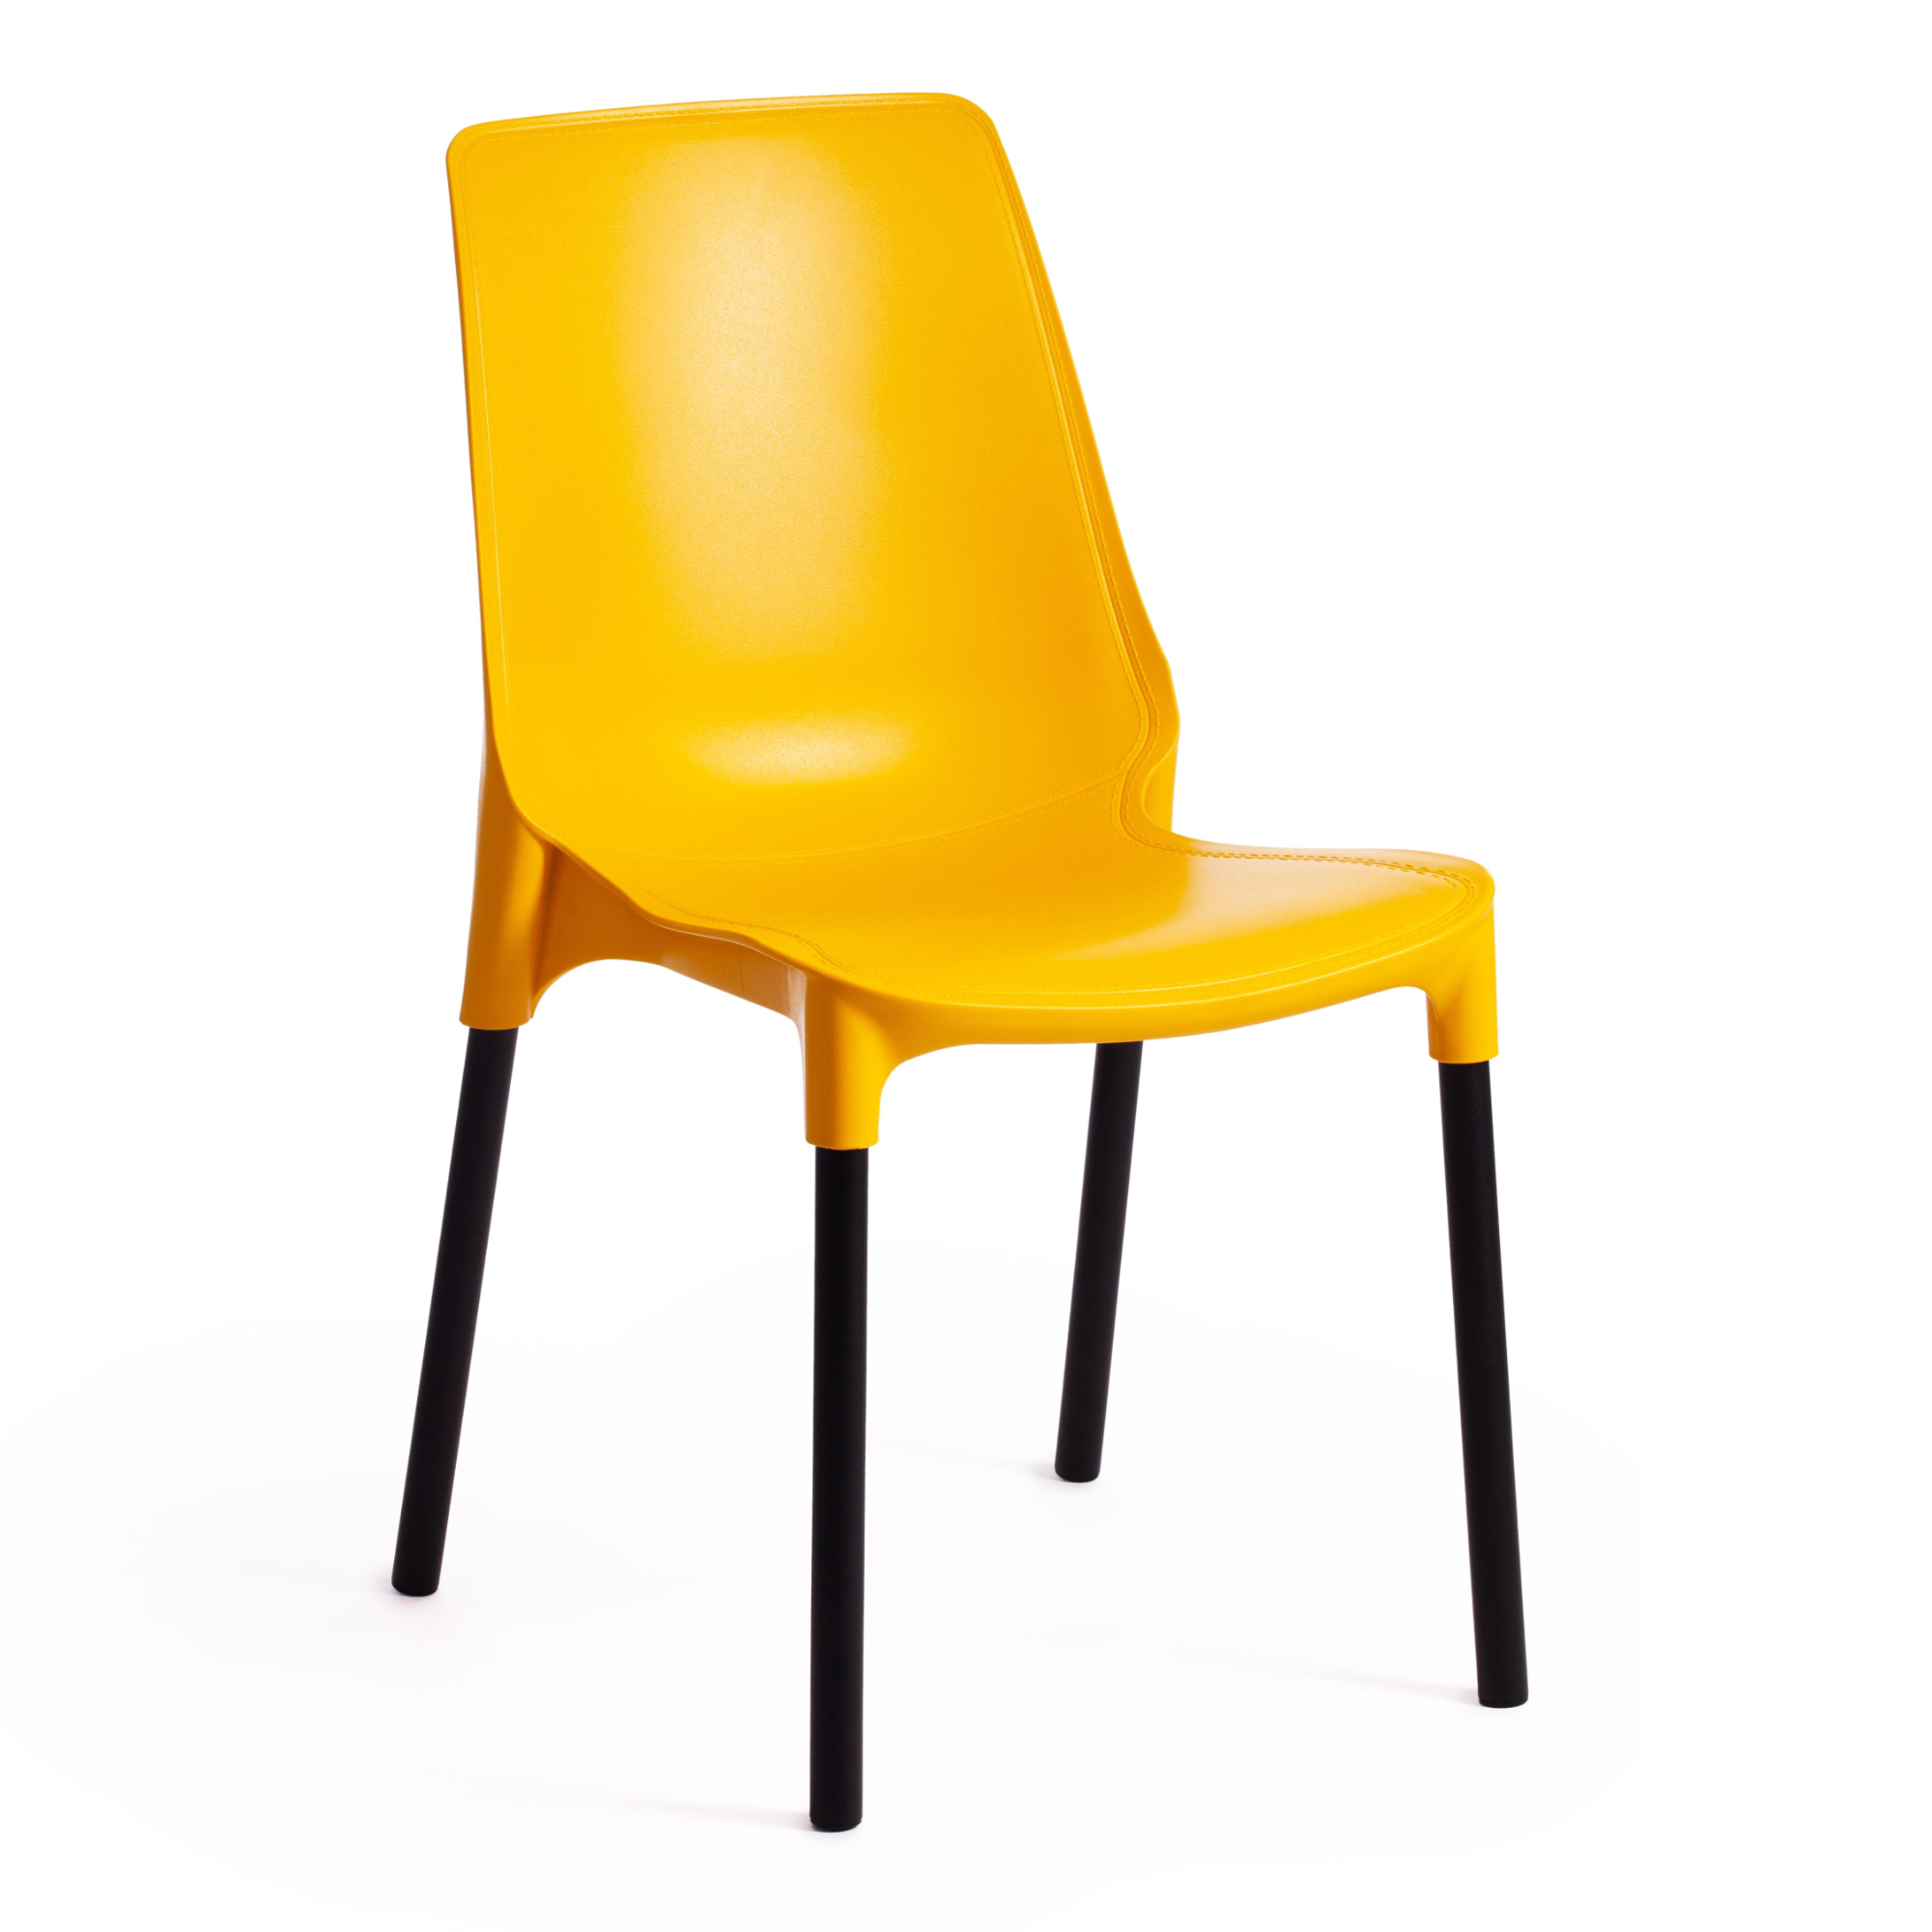 Стул ТС пластик с металлическими ножками желтый 46х56х84 см стул genius серый 19671